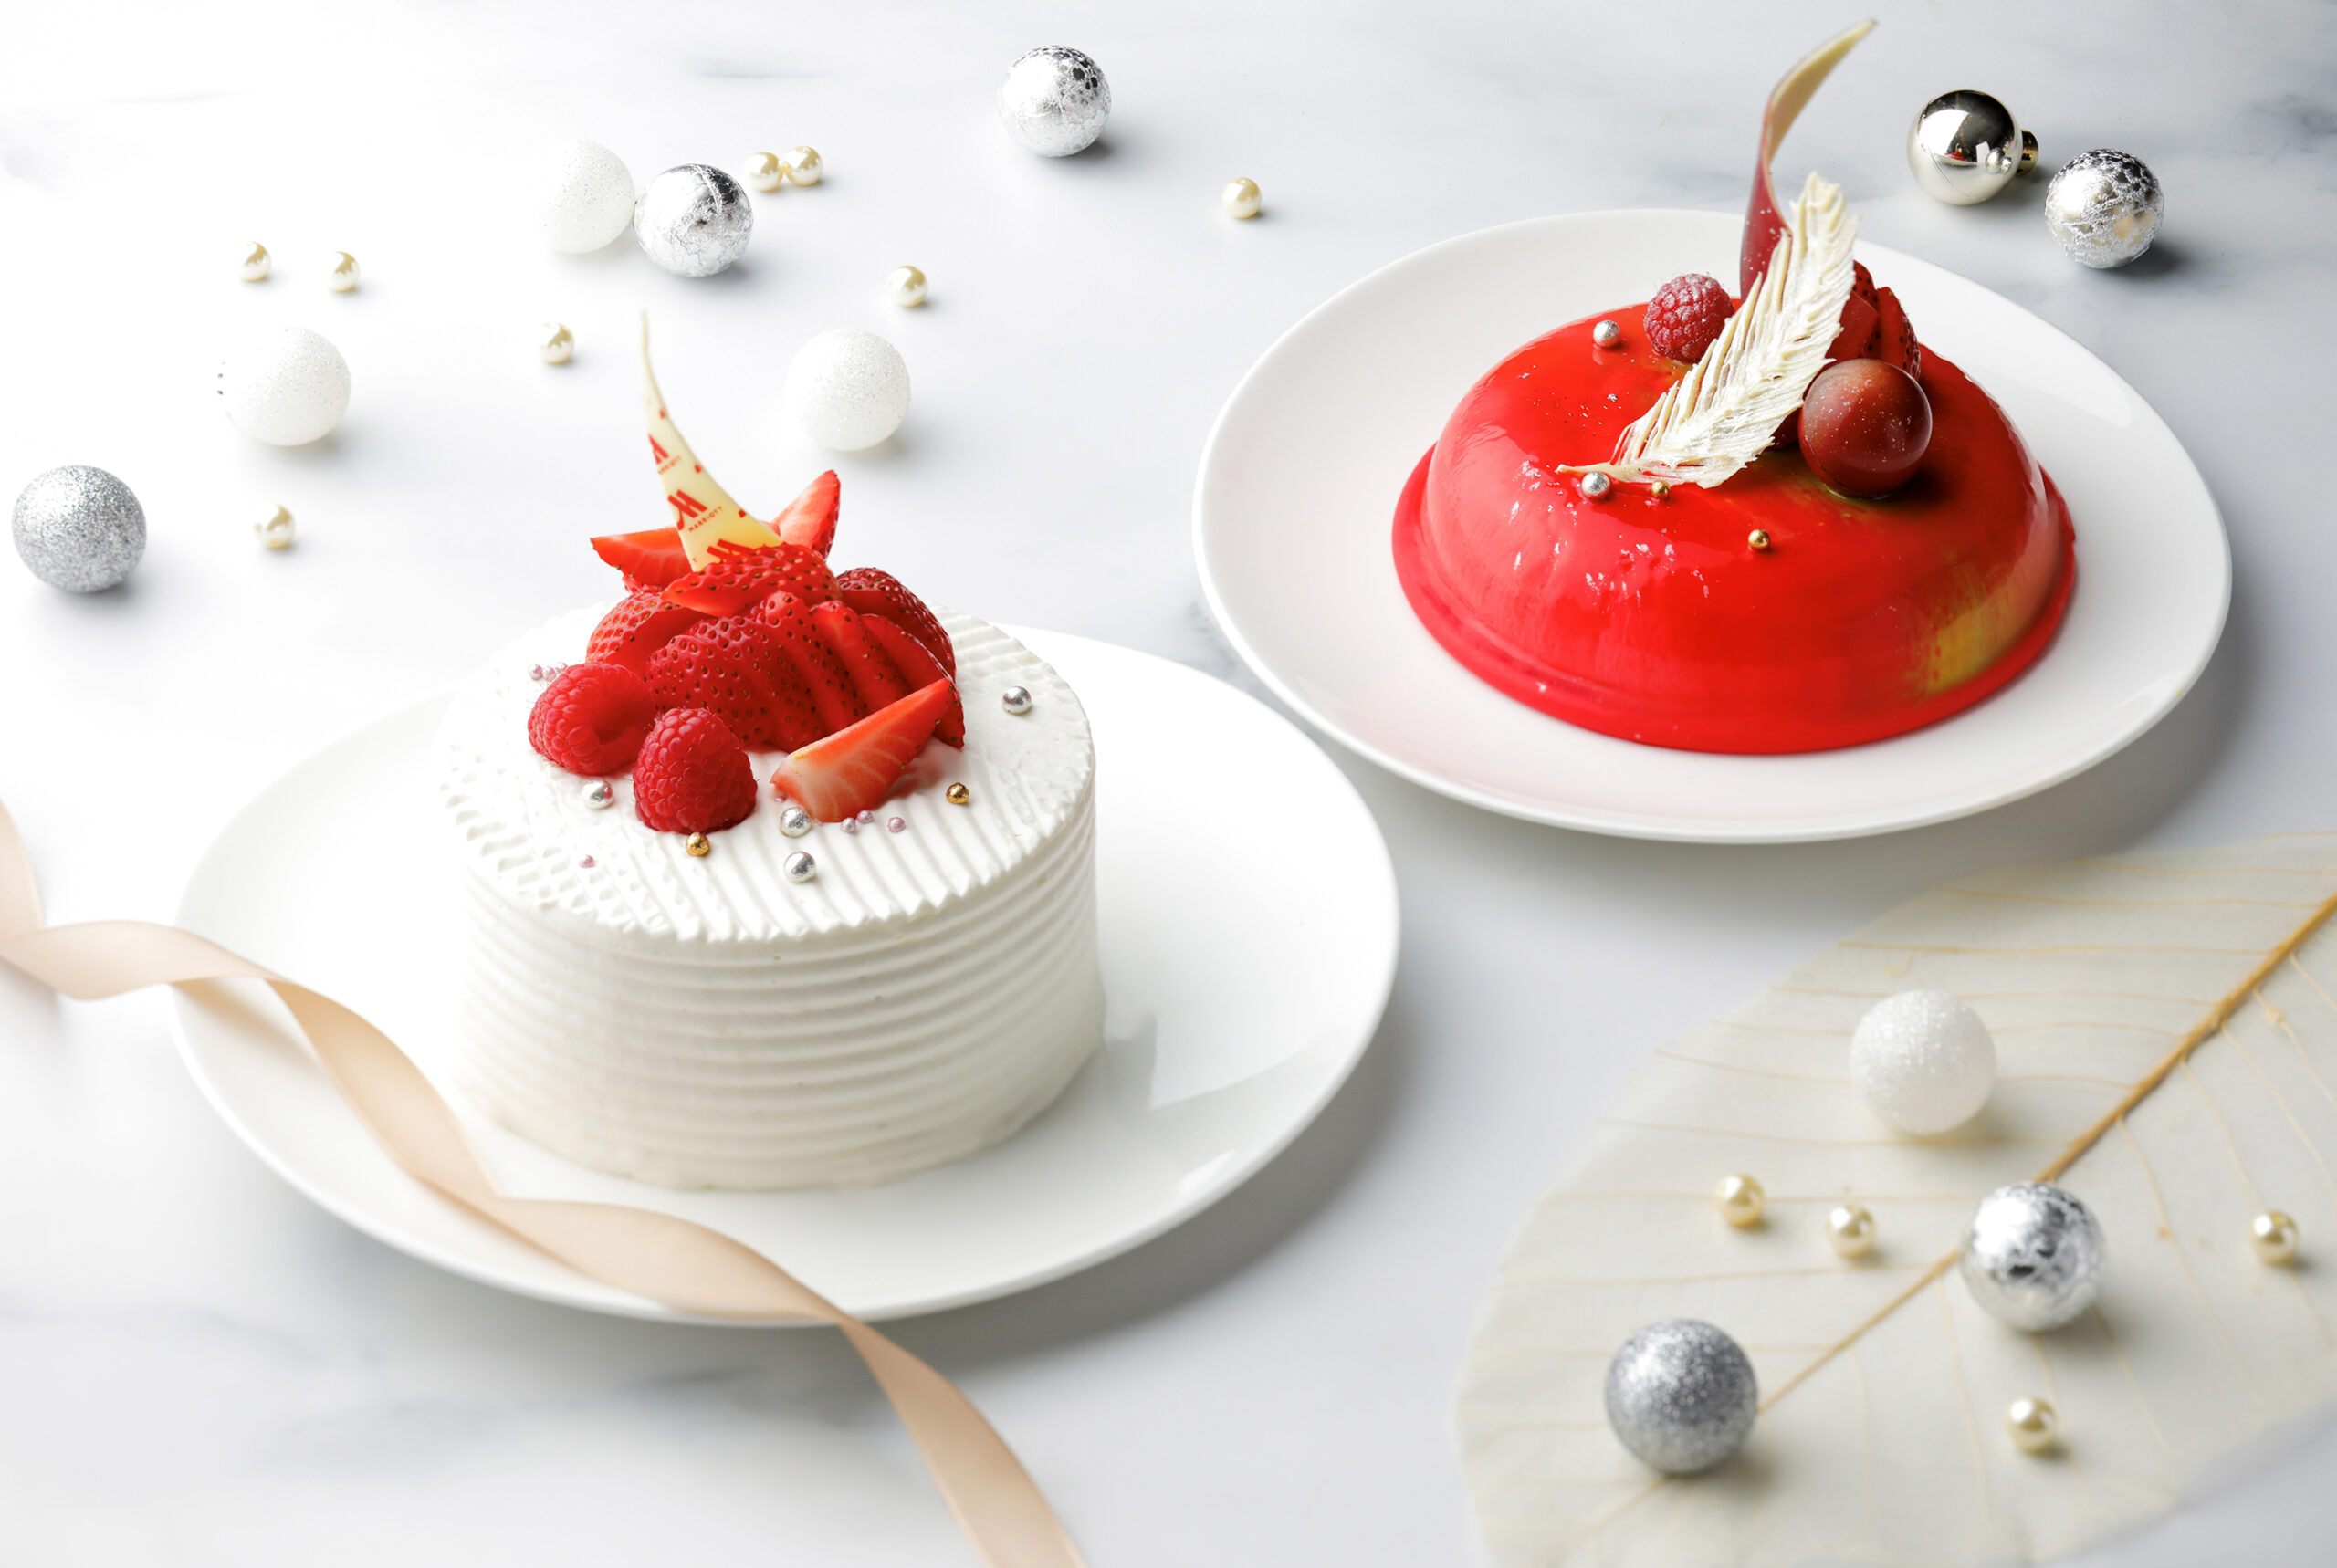 滋賀・守山市の琵琶湖マリオットホテルは10月23日より、2種のクリスマスケーキ「ノエルプラネット」、「生クリームデコレーション」の予約受付をスタートする。